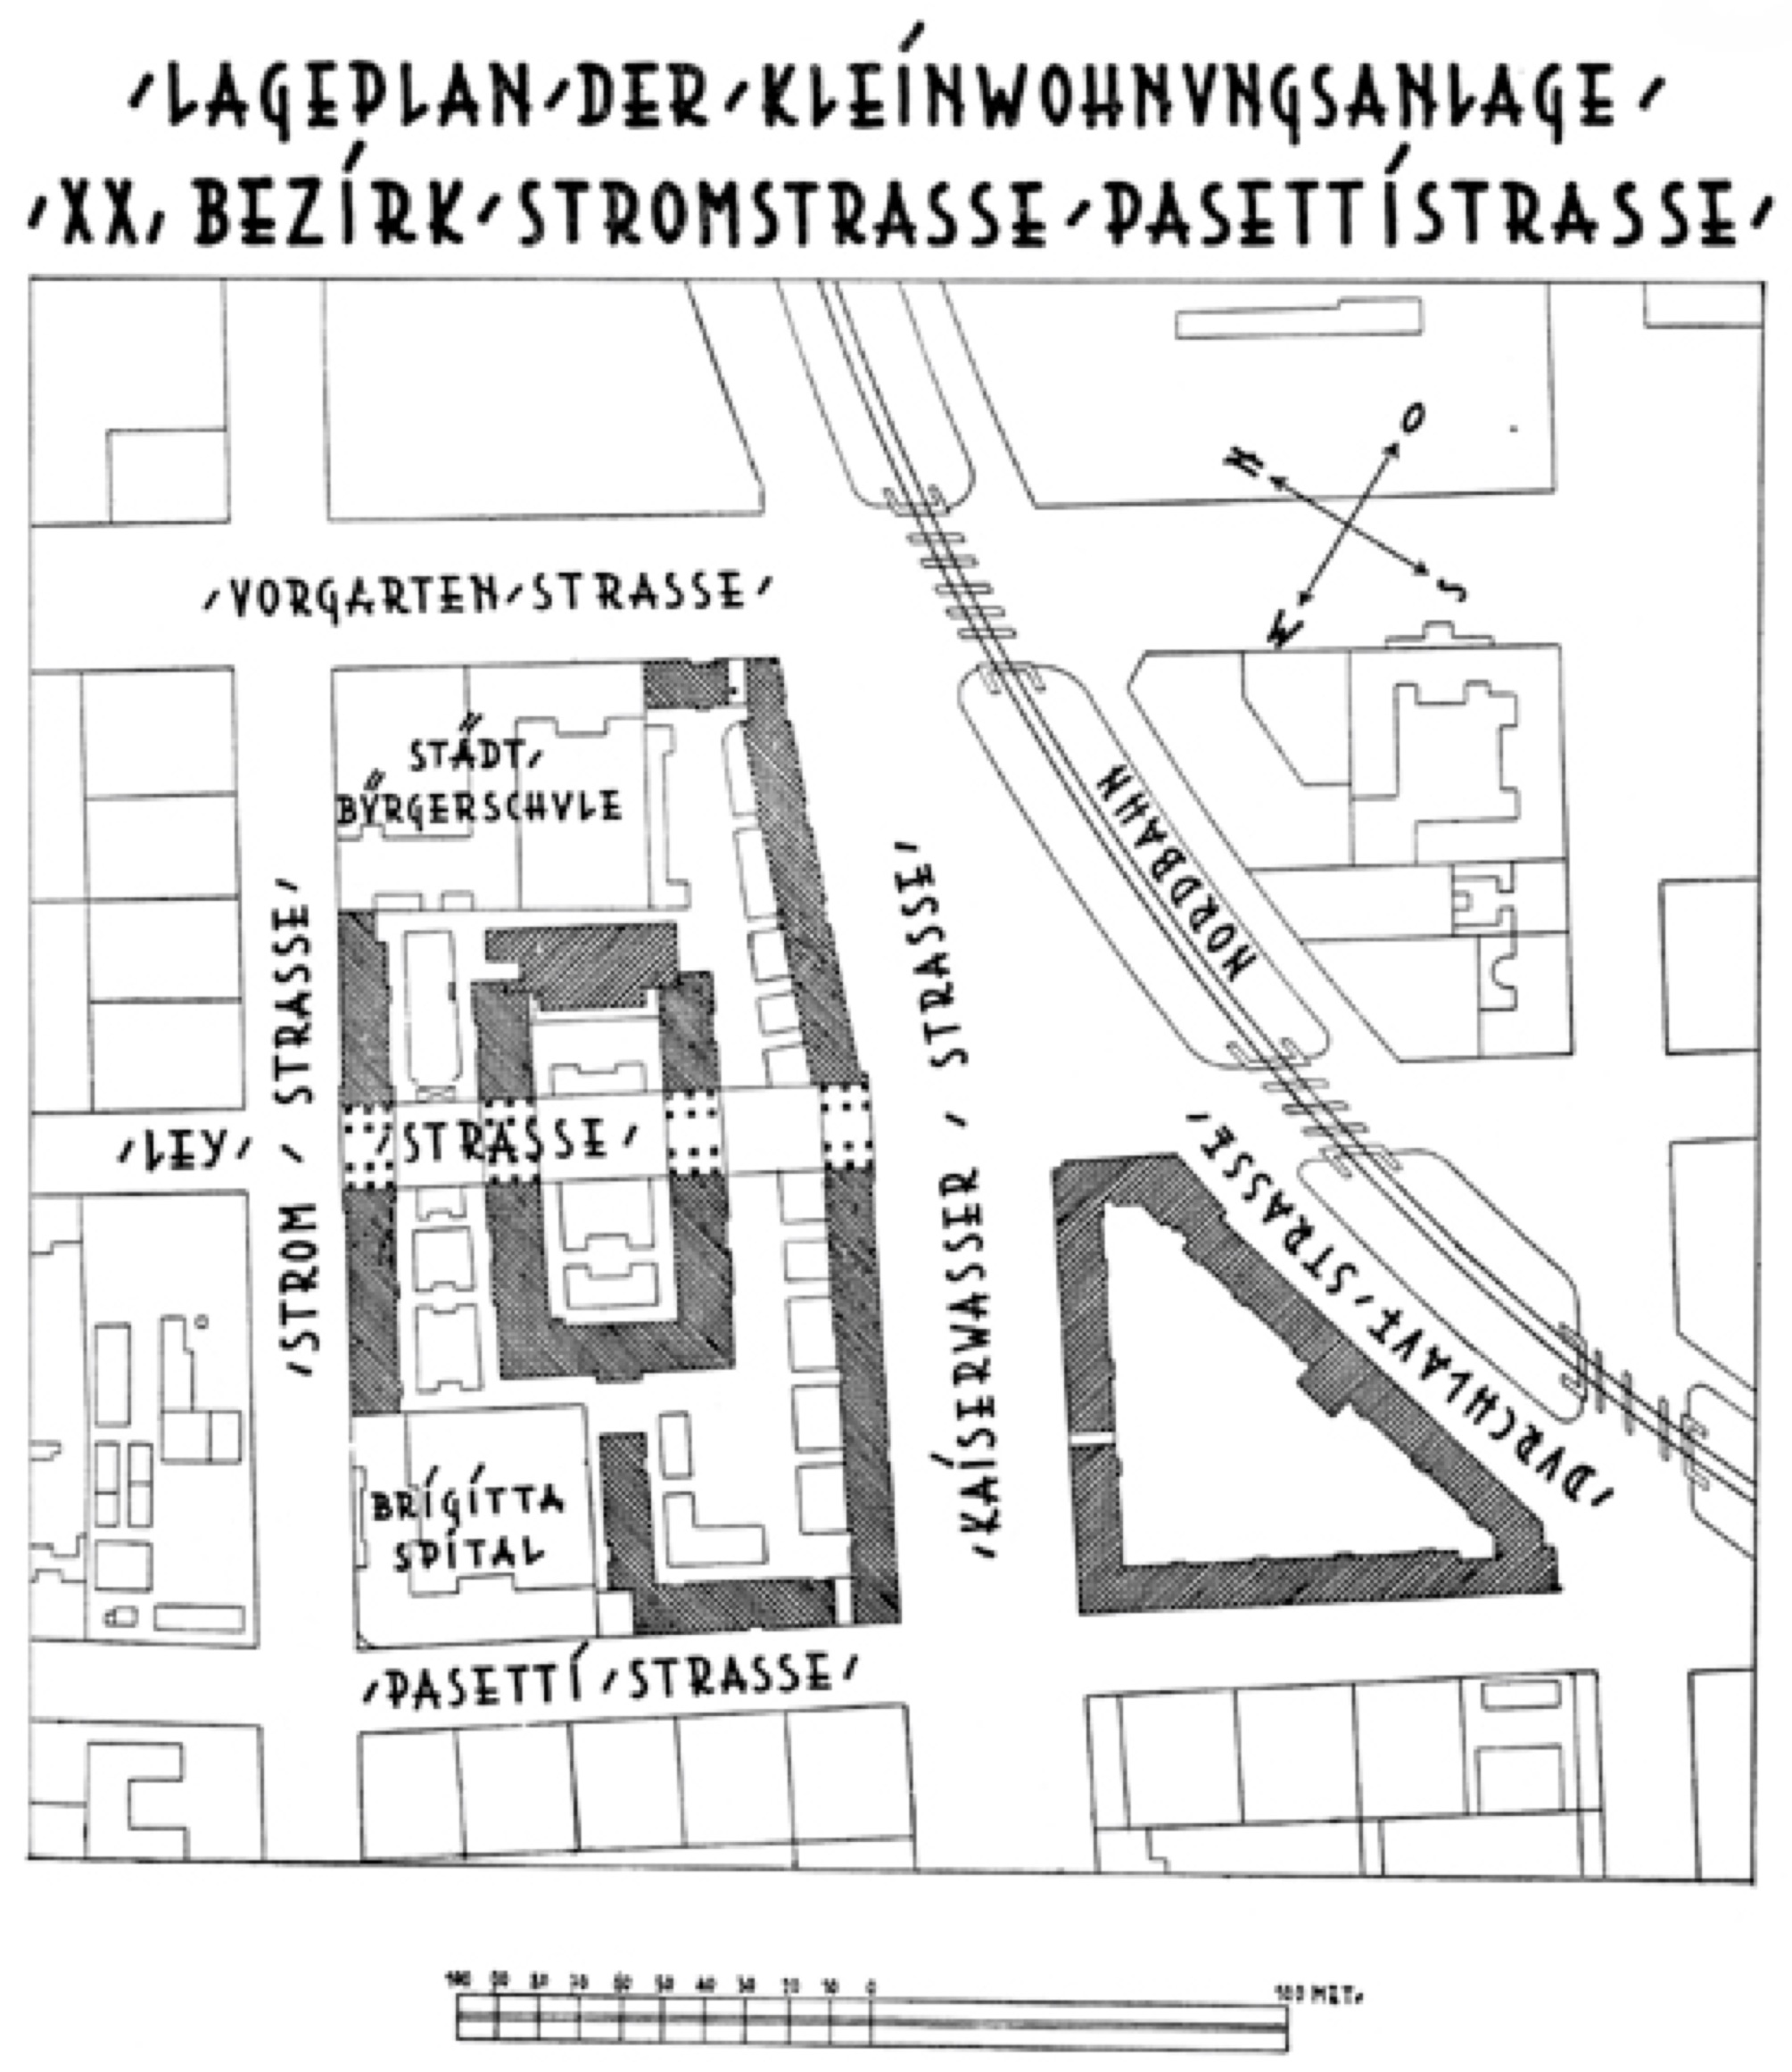 Siedler im Block. Der Winarskyhof als Superblock des Österreichischen Verbandes für Siedlungs- und Kleingartenwesen